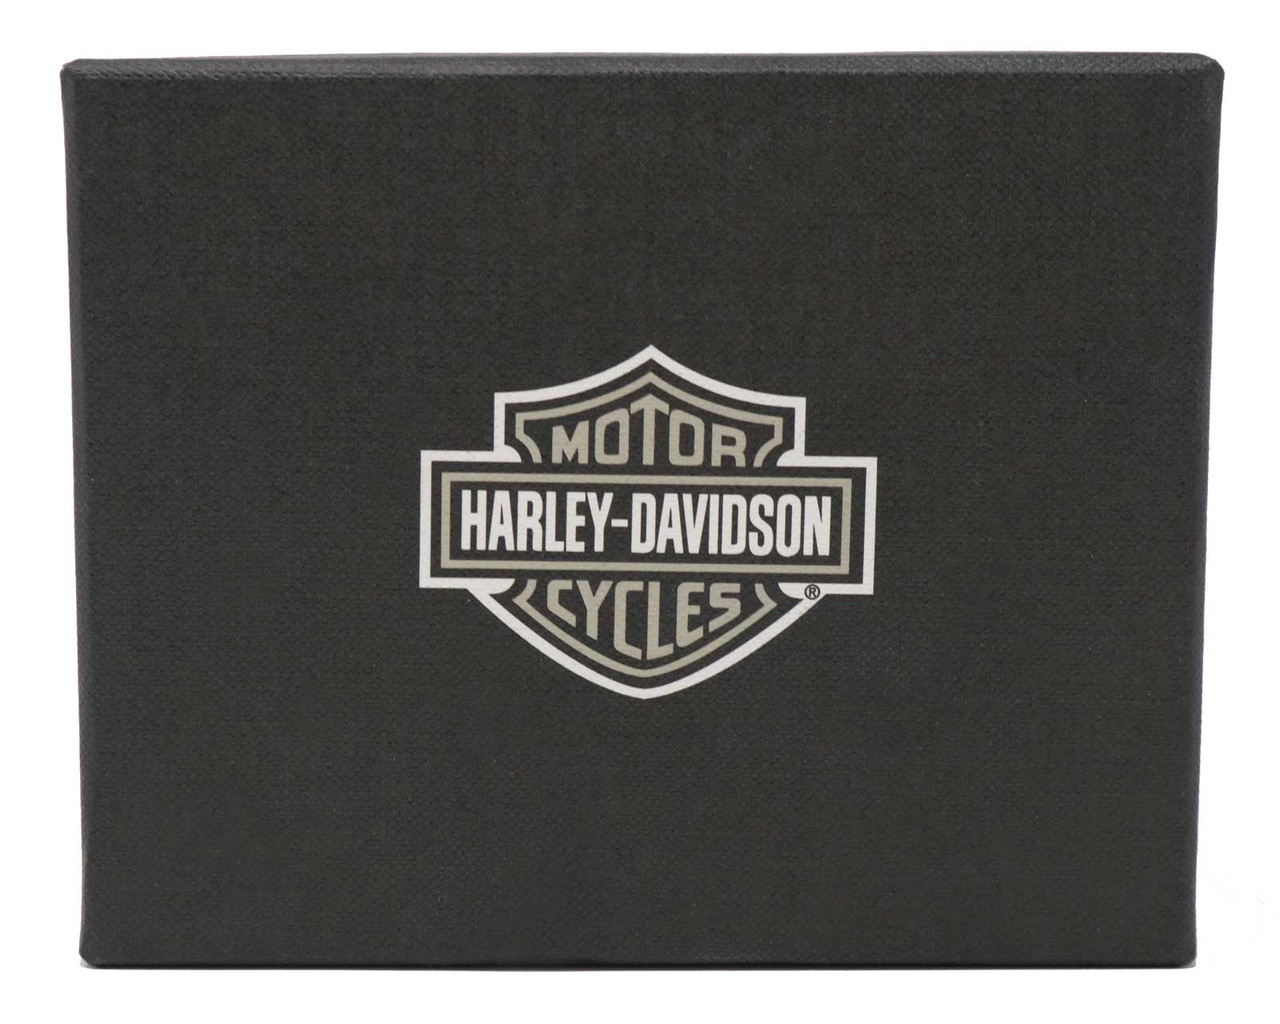 Harley-Davidson Men’s Bar & Shield Leather Tri-Fold Wallet Boxed Gift Set- Black